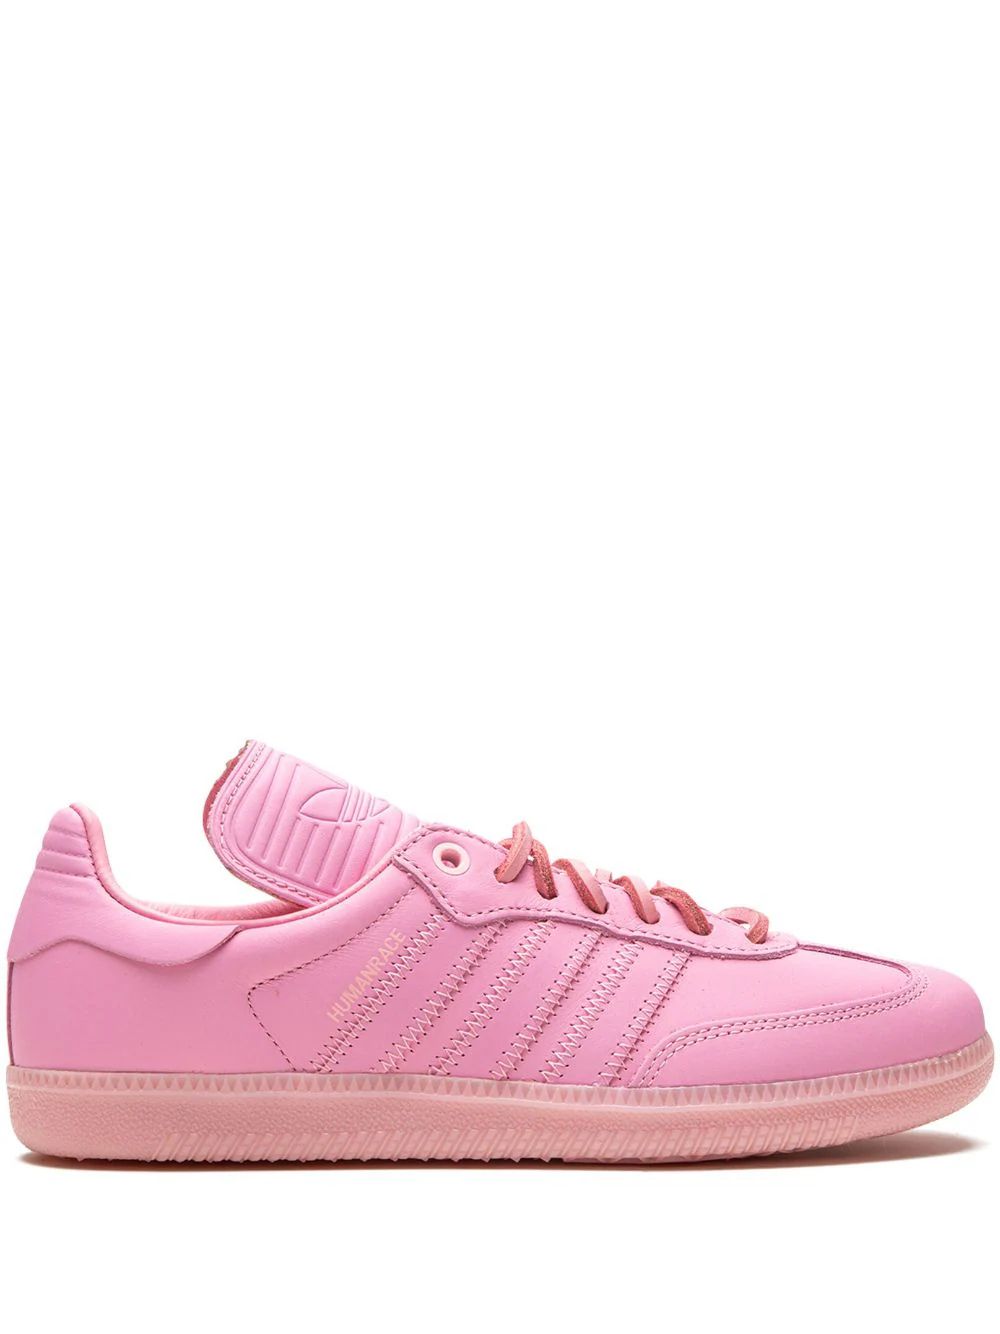 x Pharrell Adidas Samba Humanrace "Pink" sneakers | Farfetch Global